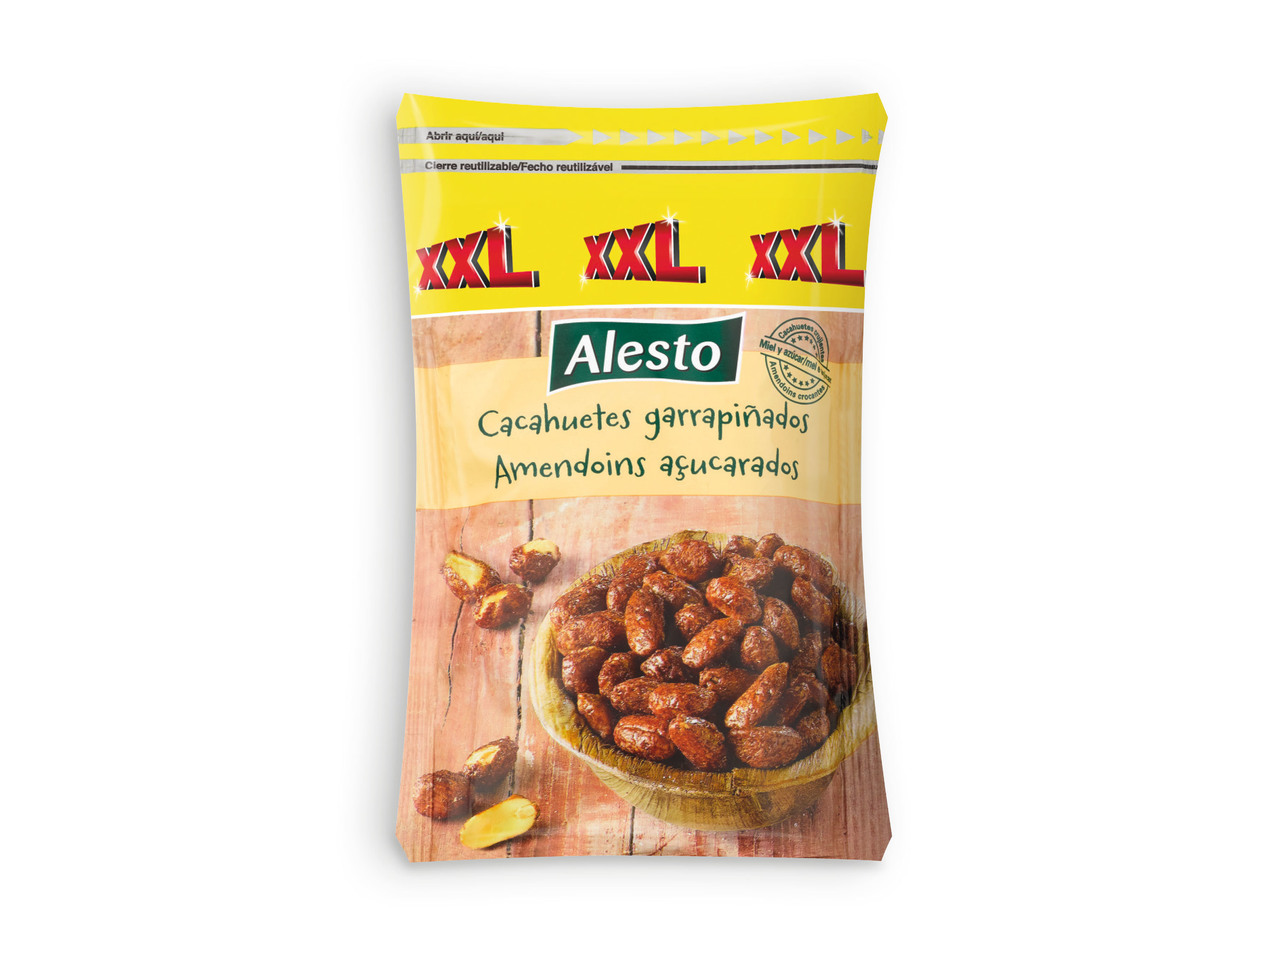 ALESTO(R) Amendoins Doces